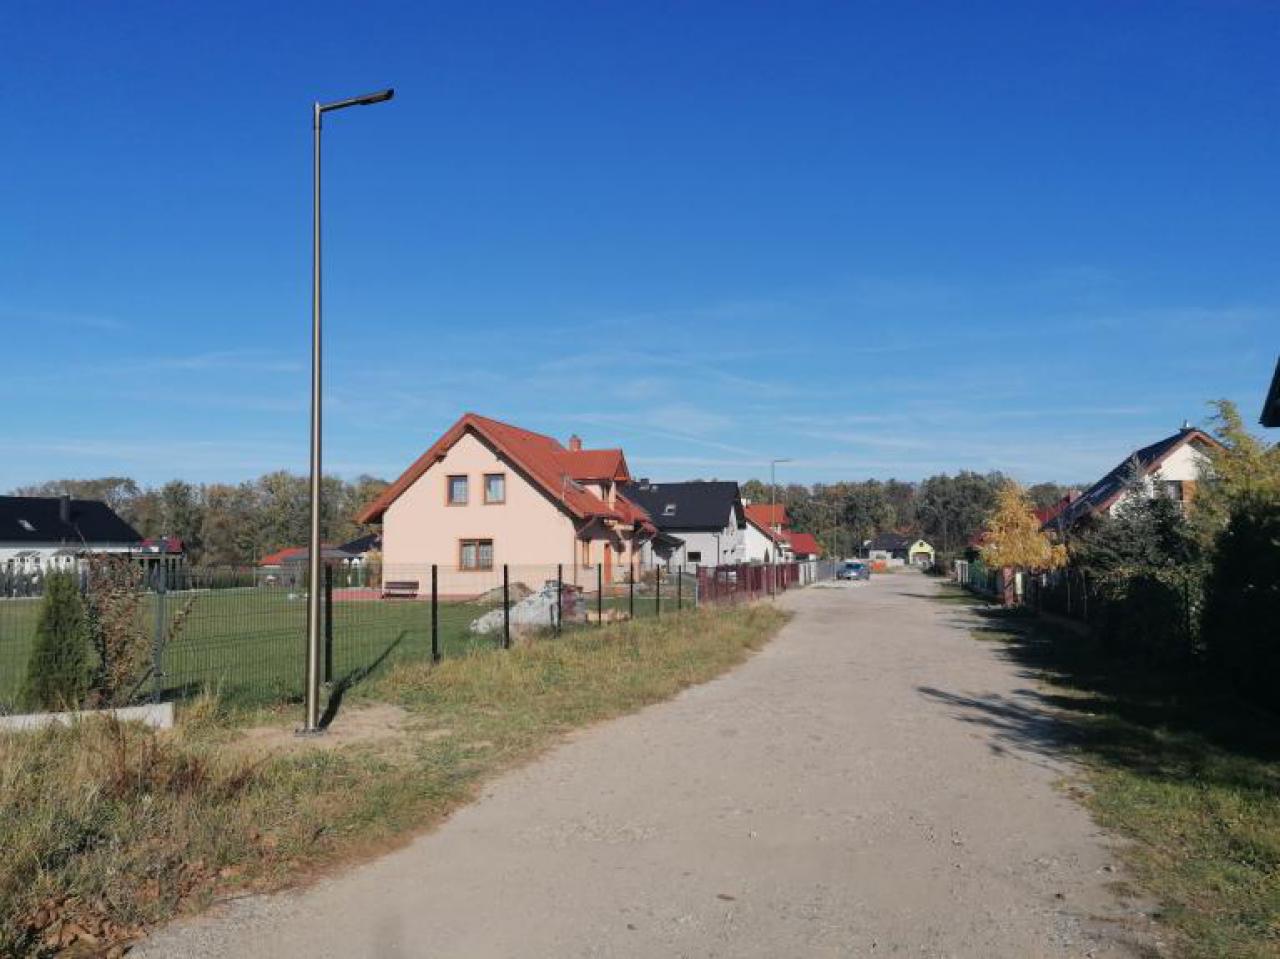 Nowe oświetlenie na osiedlu domków jednorodzinnych w Jaworzynie Śląskiej